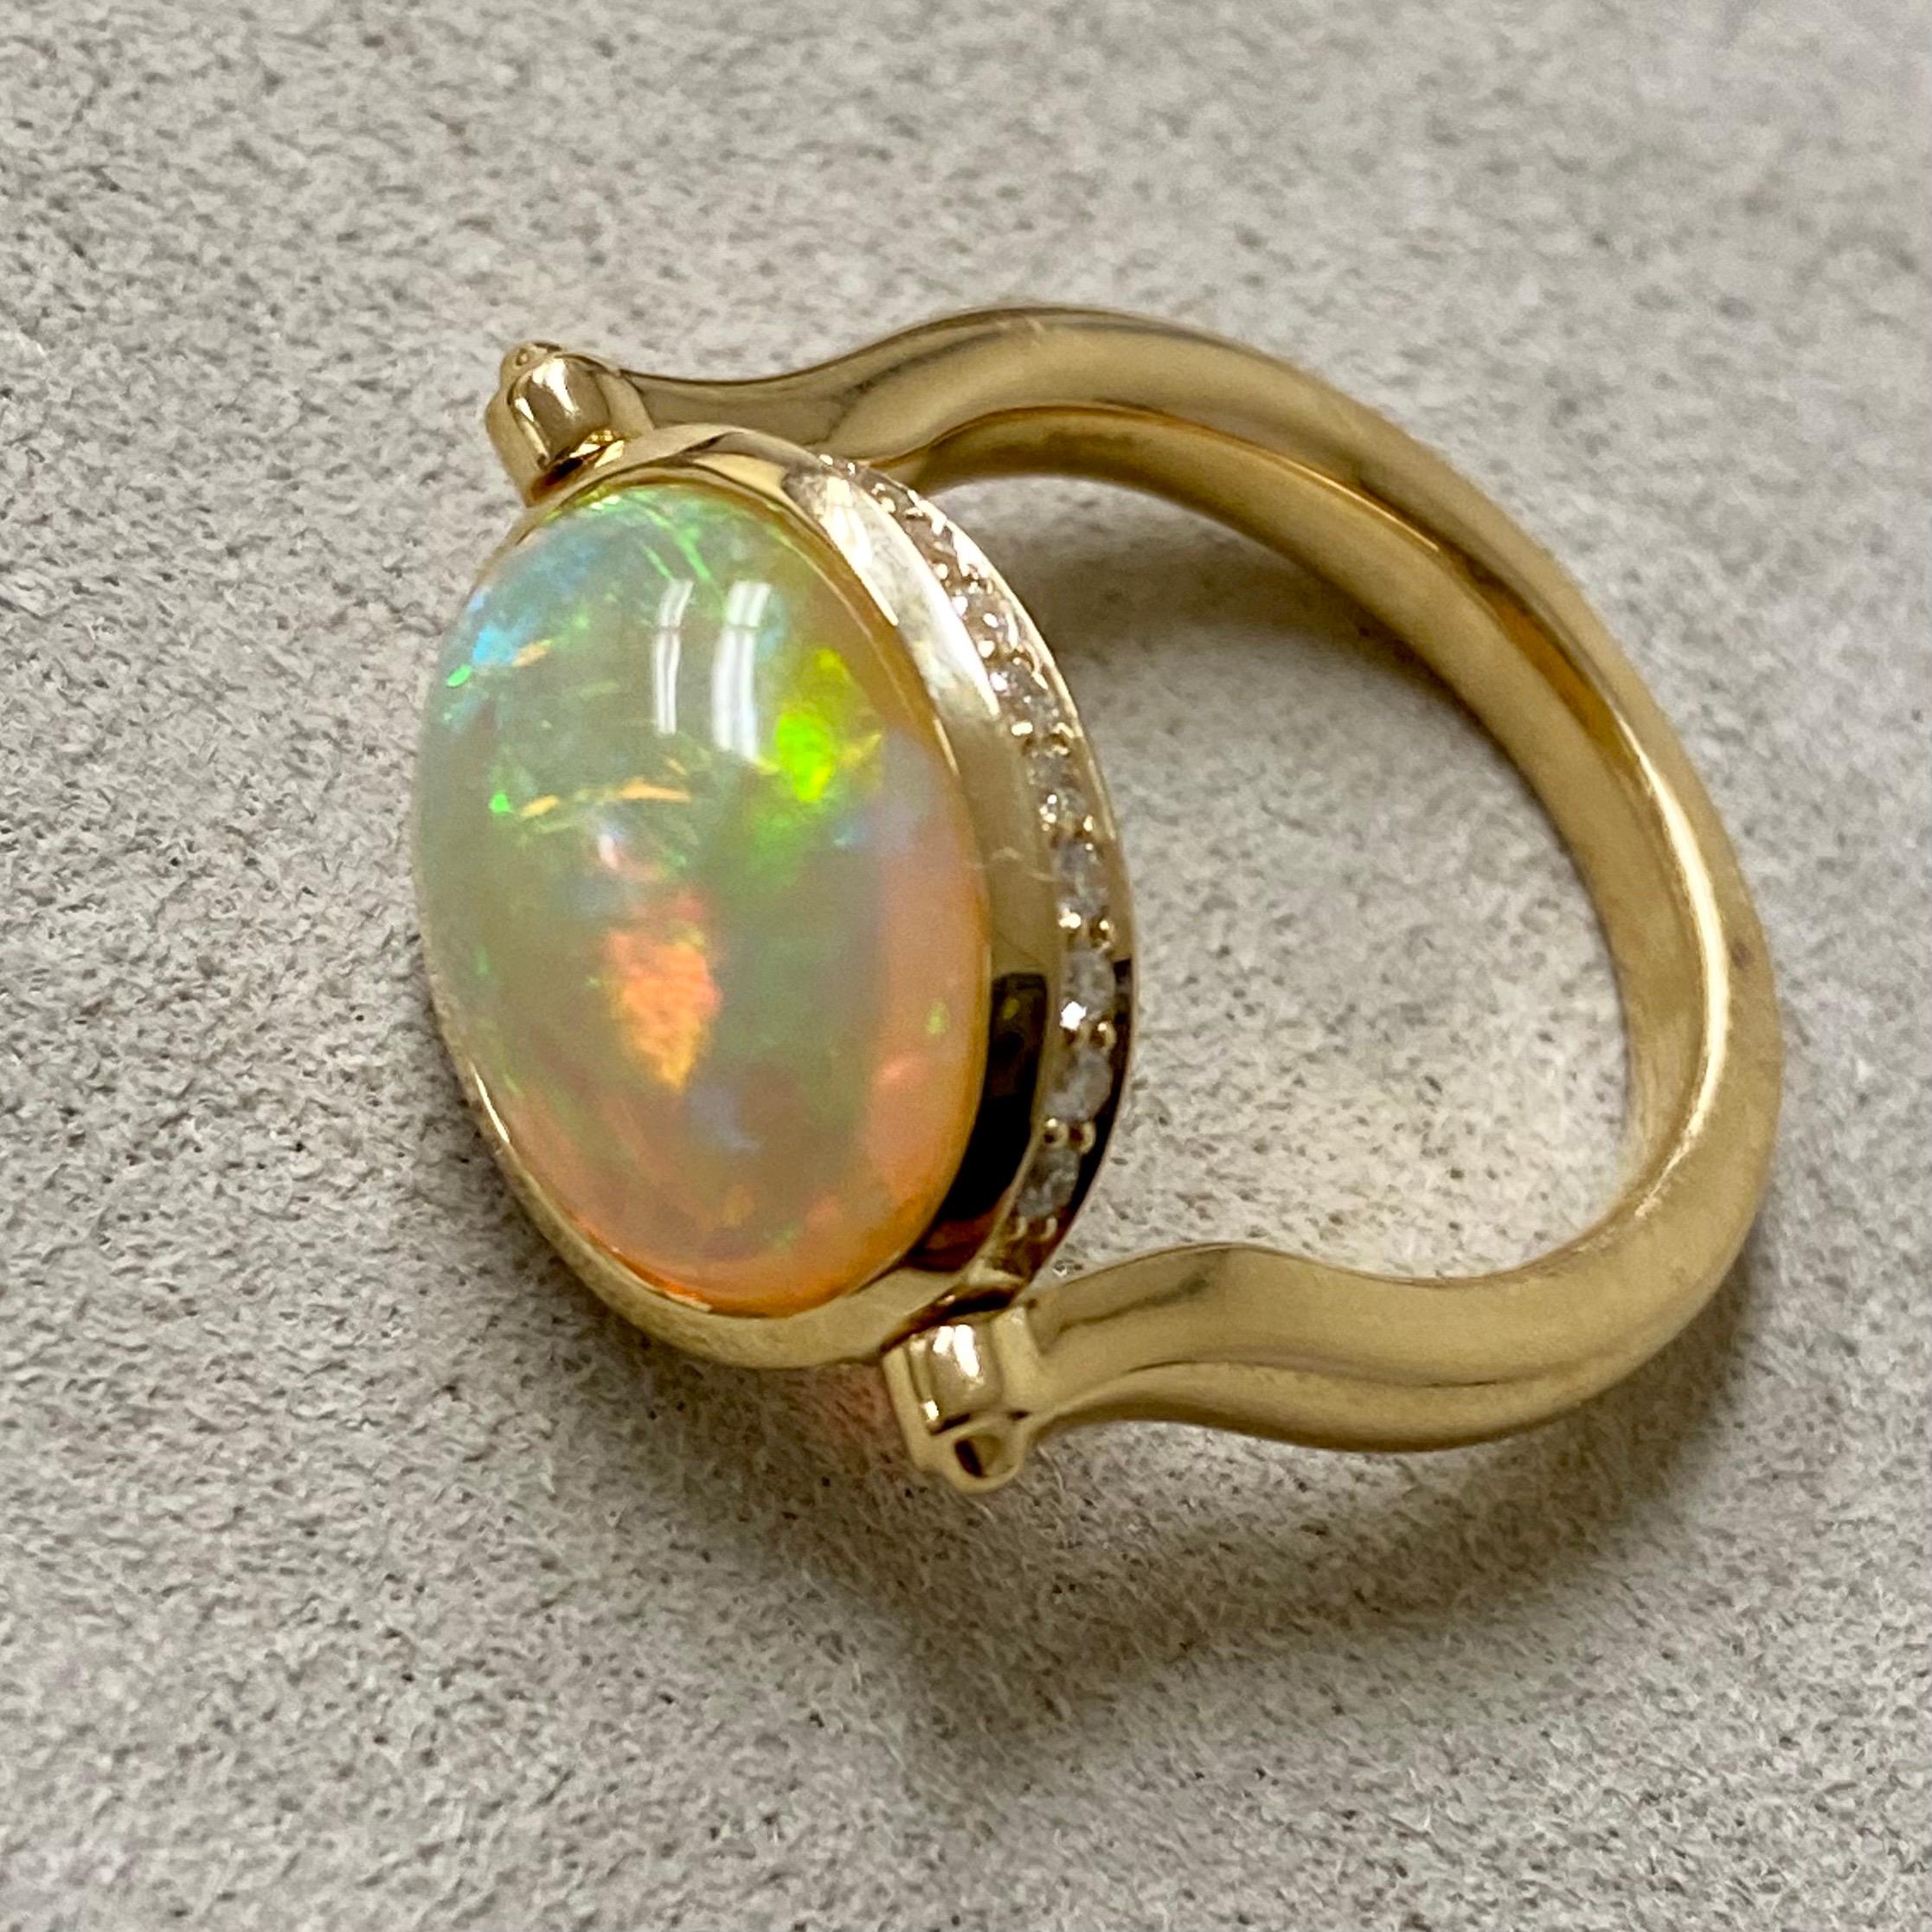 Créé en or jaune 18 carats
Opale éthiopienne 4 carats environ.
Diamants 0,30 carat environ
Taille de la bague US 6.5, peut être ajustée selon la demande
Mécanisme de pivotement
Unique en son genre

Magnifiquement réalisée en or jaune 18 carats,